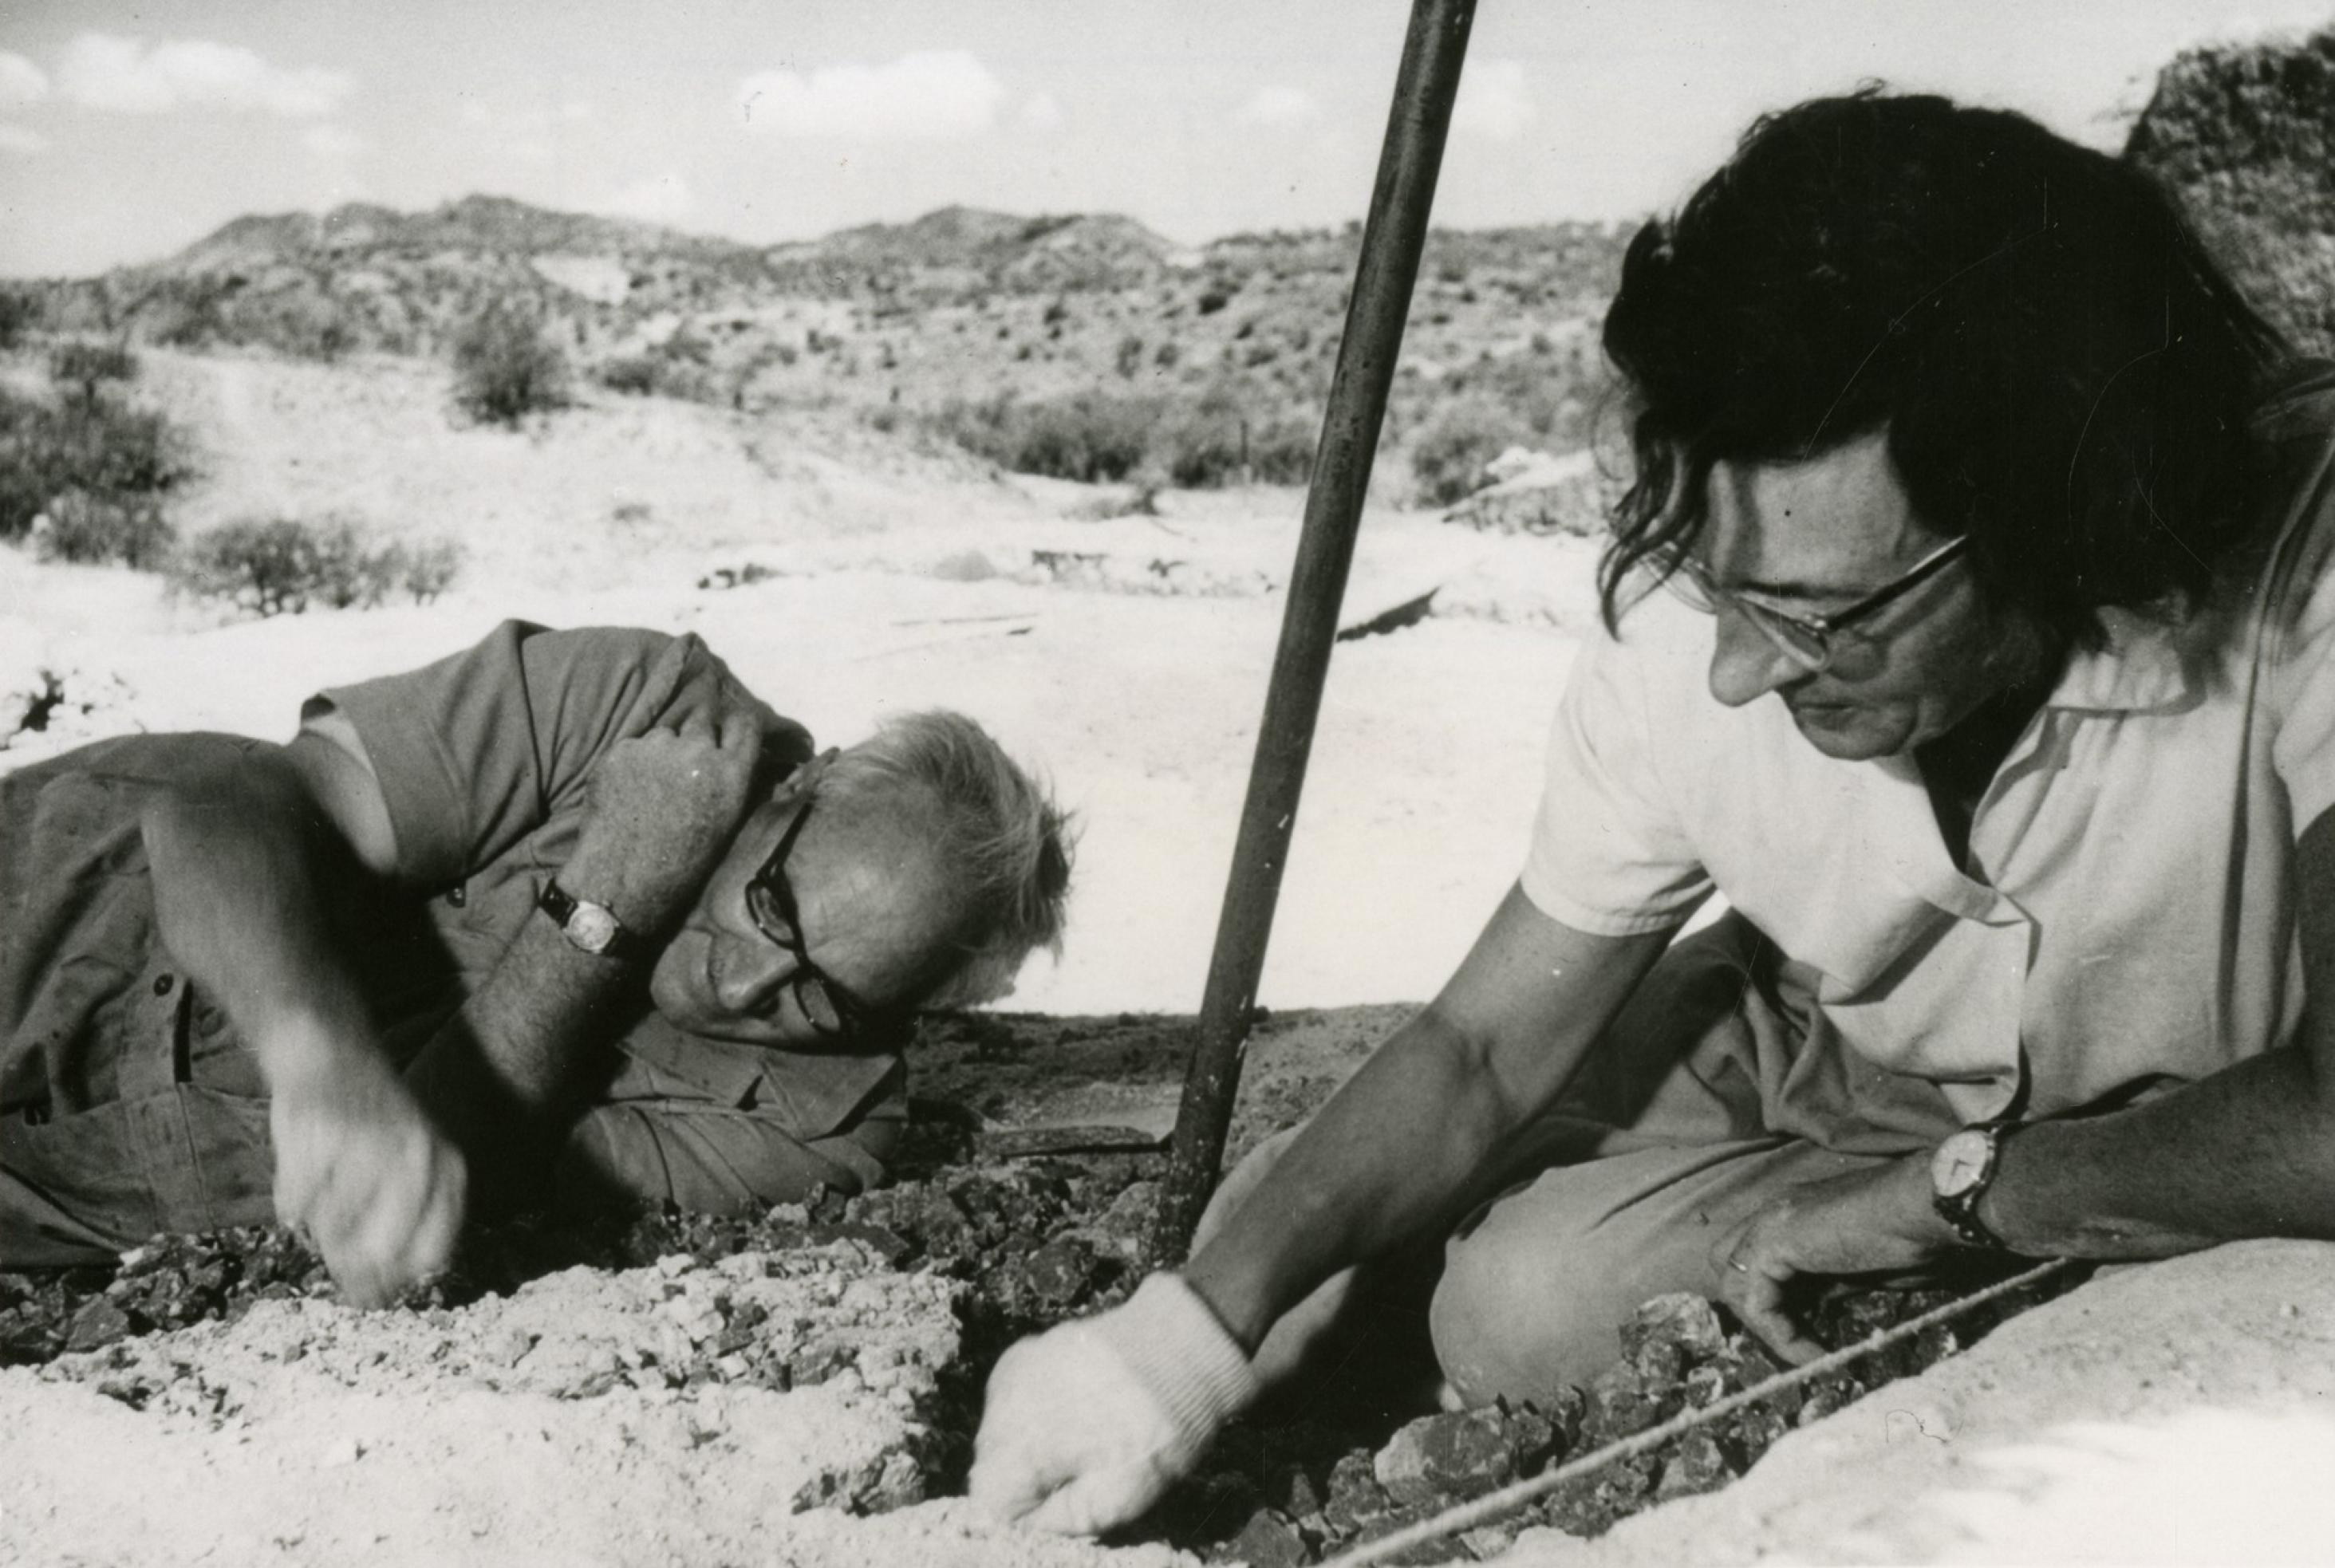 Auf dem sandigen Boden in der Olduvai-Schlucht in Tansania liegen und knien Louis und Mary Leakey, um nach Fossilien von Urmenschen zu graben. Erst finden sie dort den Nussknackermenschen und später den Homo habilis, den ersten Menschen. Dieser stellte bereits Steinwerkzeuge her.